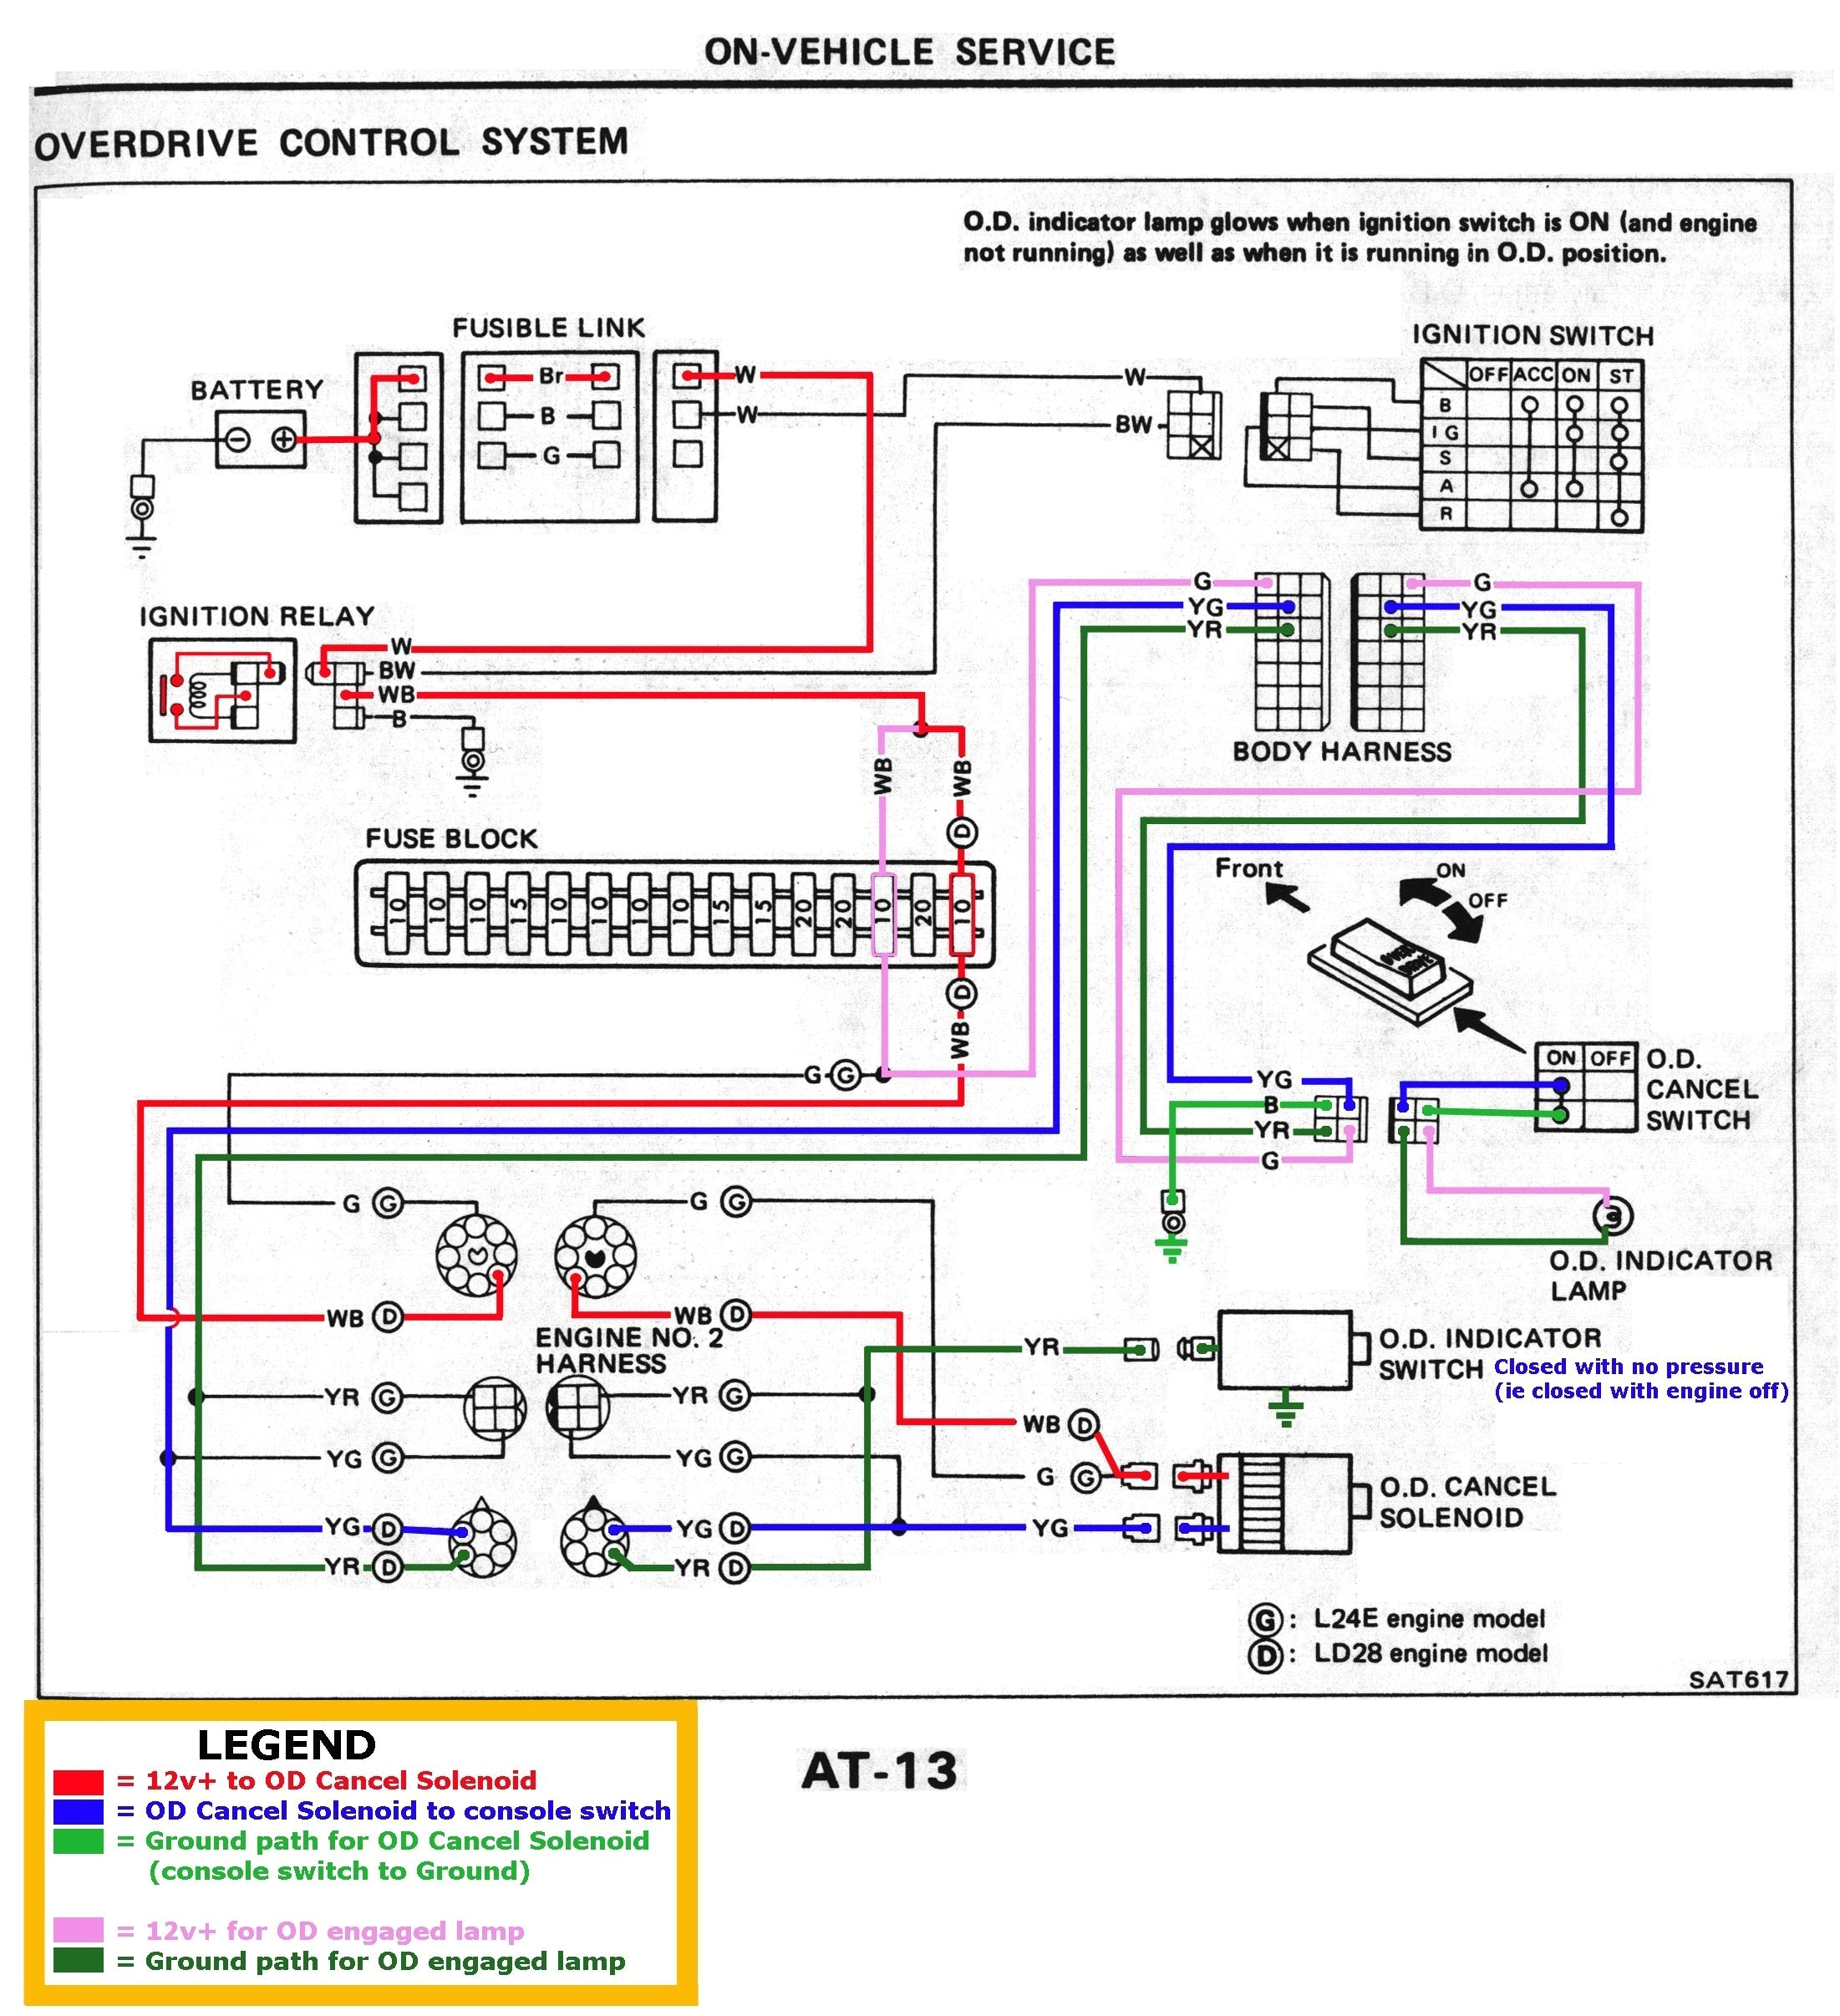 hastings wiring diagrams use wiring diagram hastings mau wiring diagram mau wiring diagram